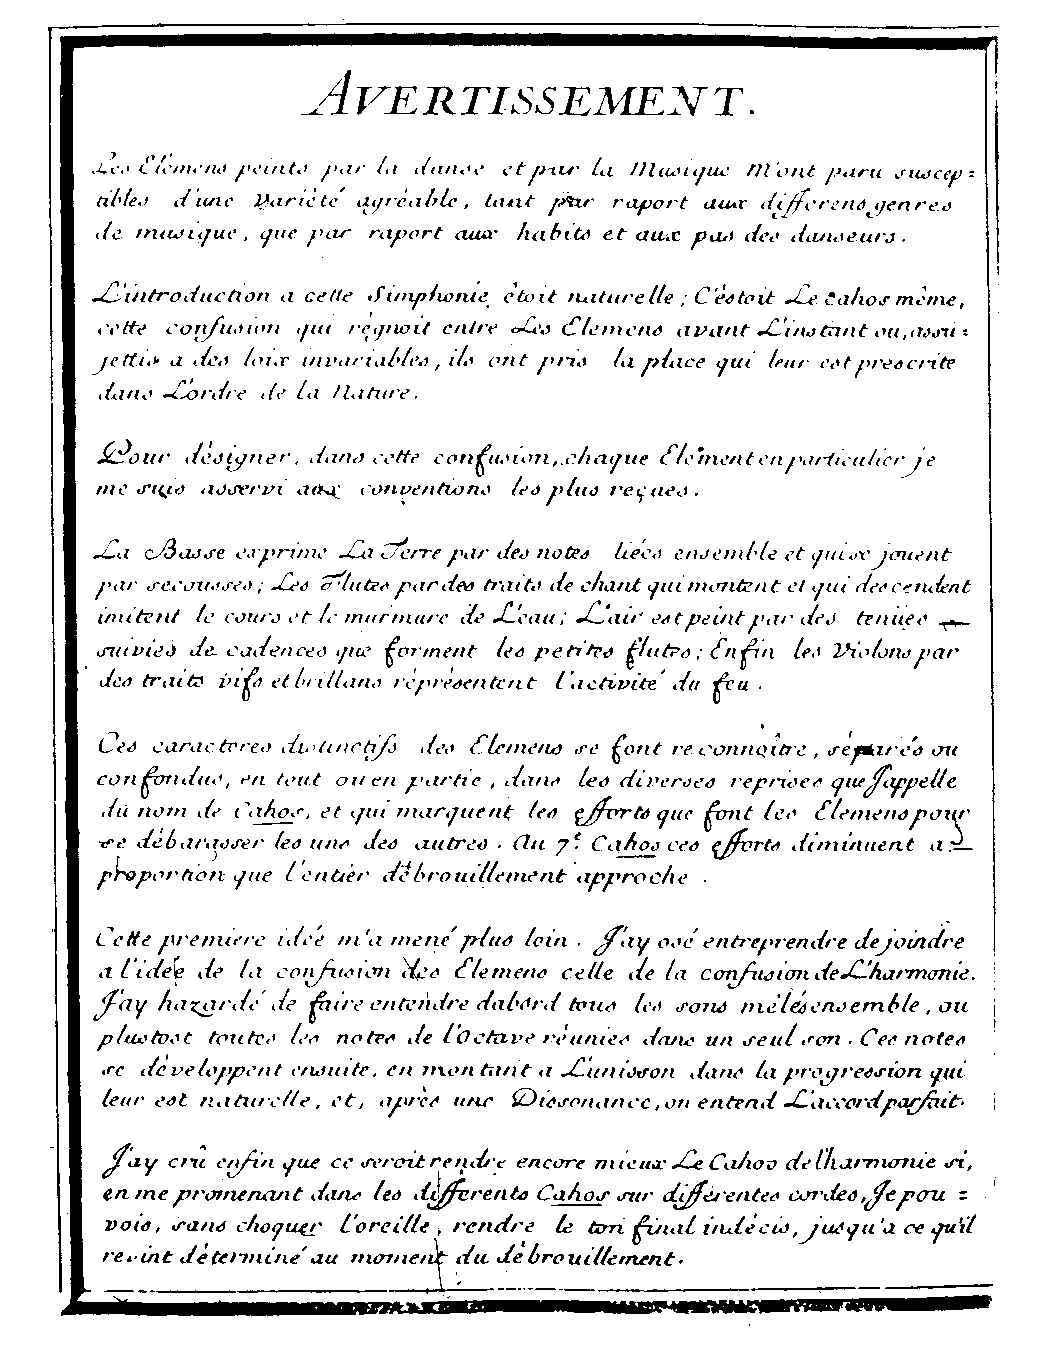 Avertissement aux Elemens, Jean-Fry Rebel, 1737.  Cliquer pour agrandir.